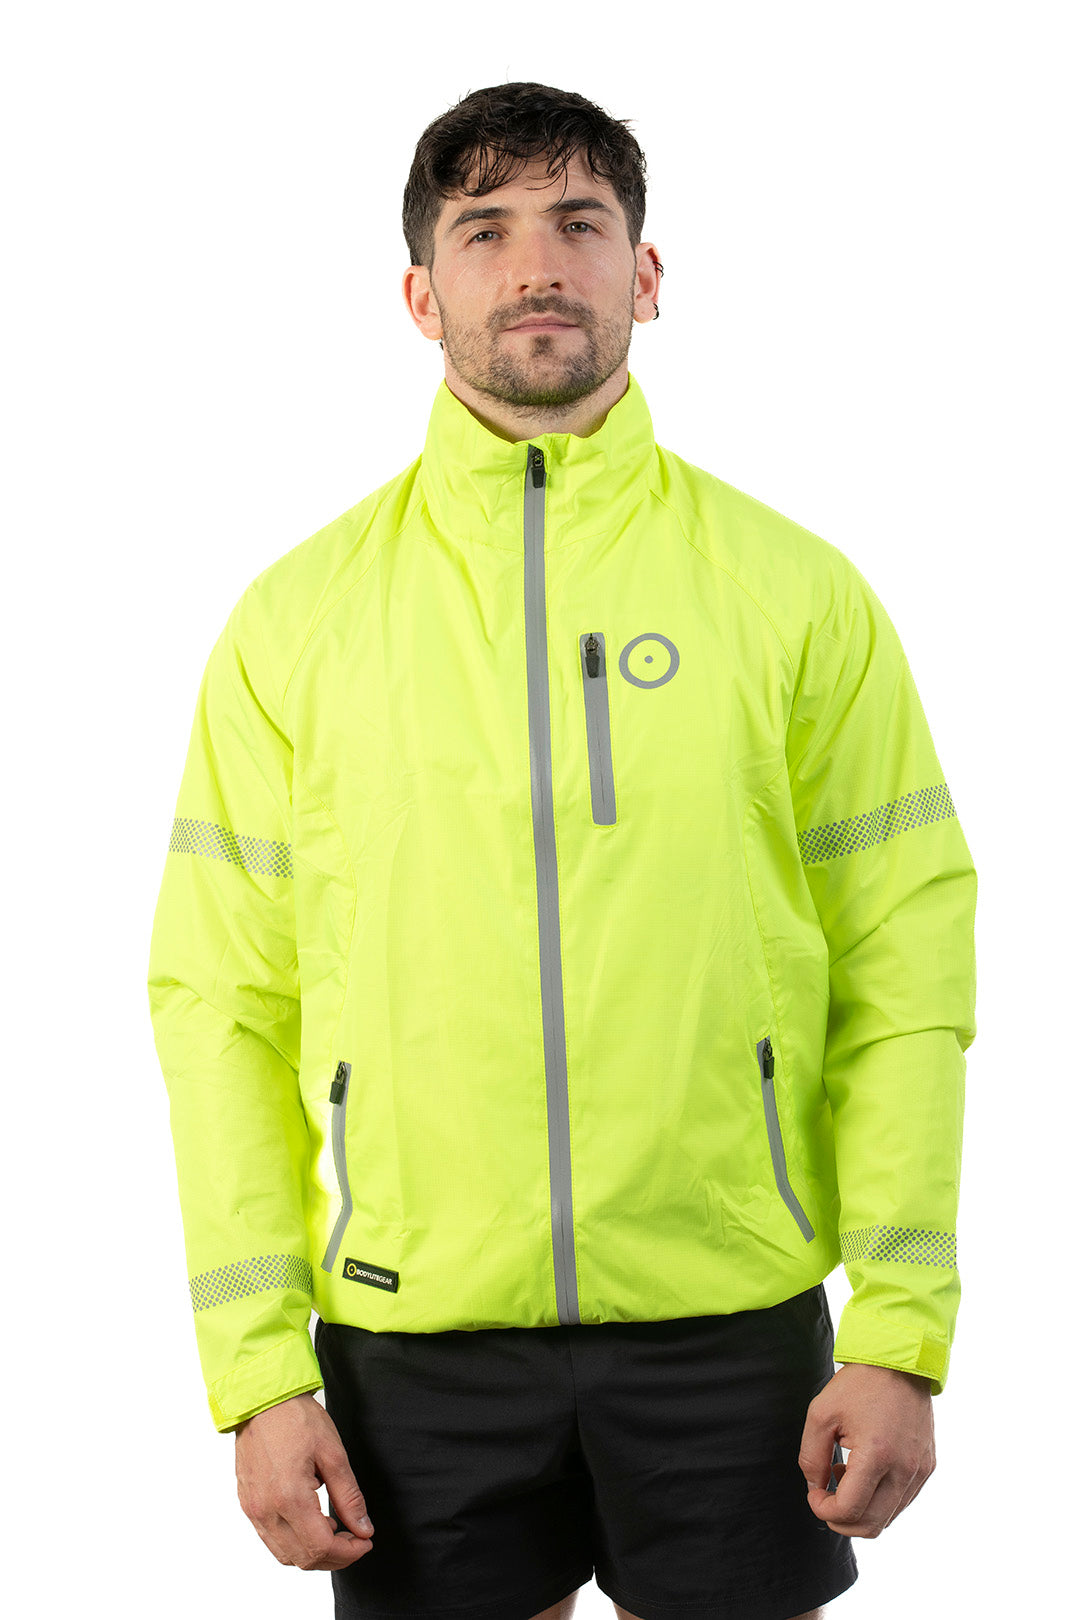 Neon Yellow Reflective Jacket